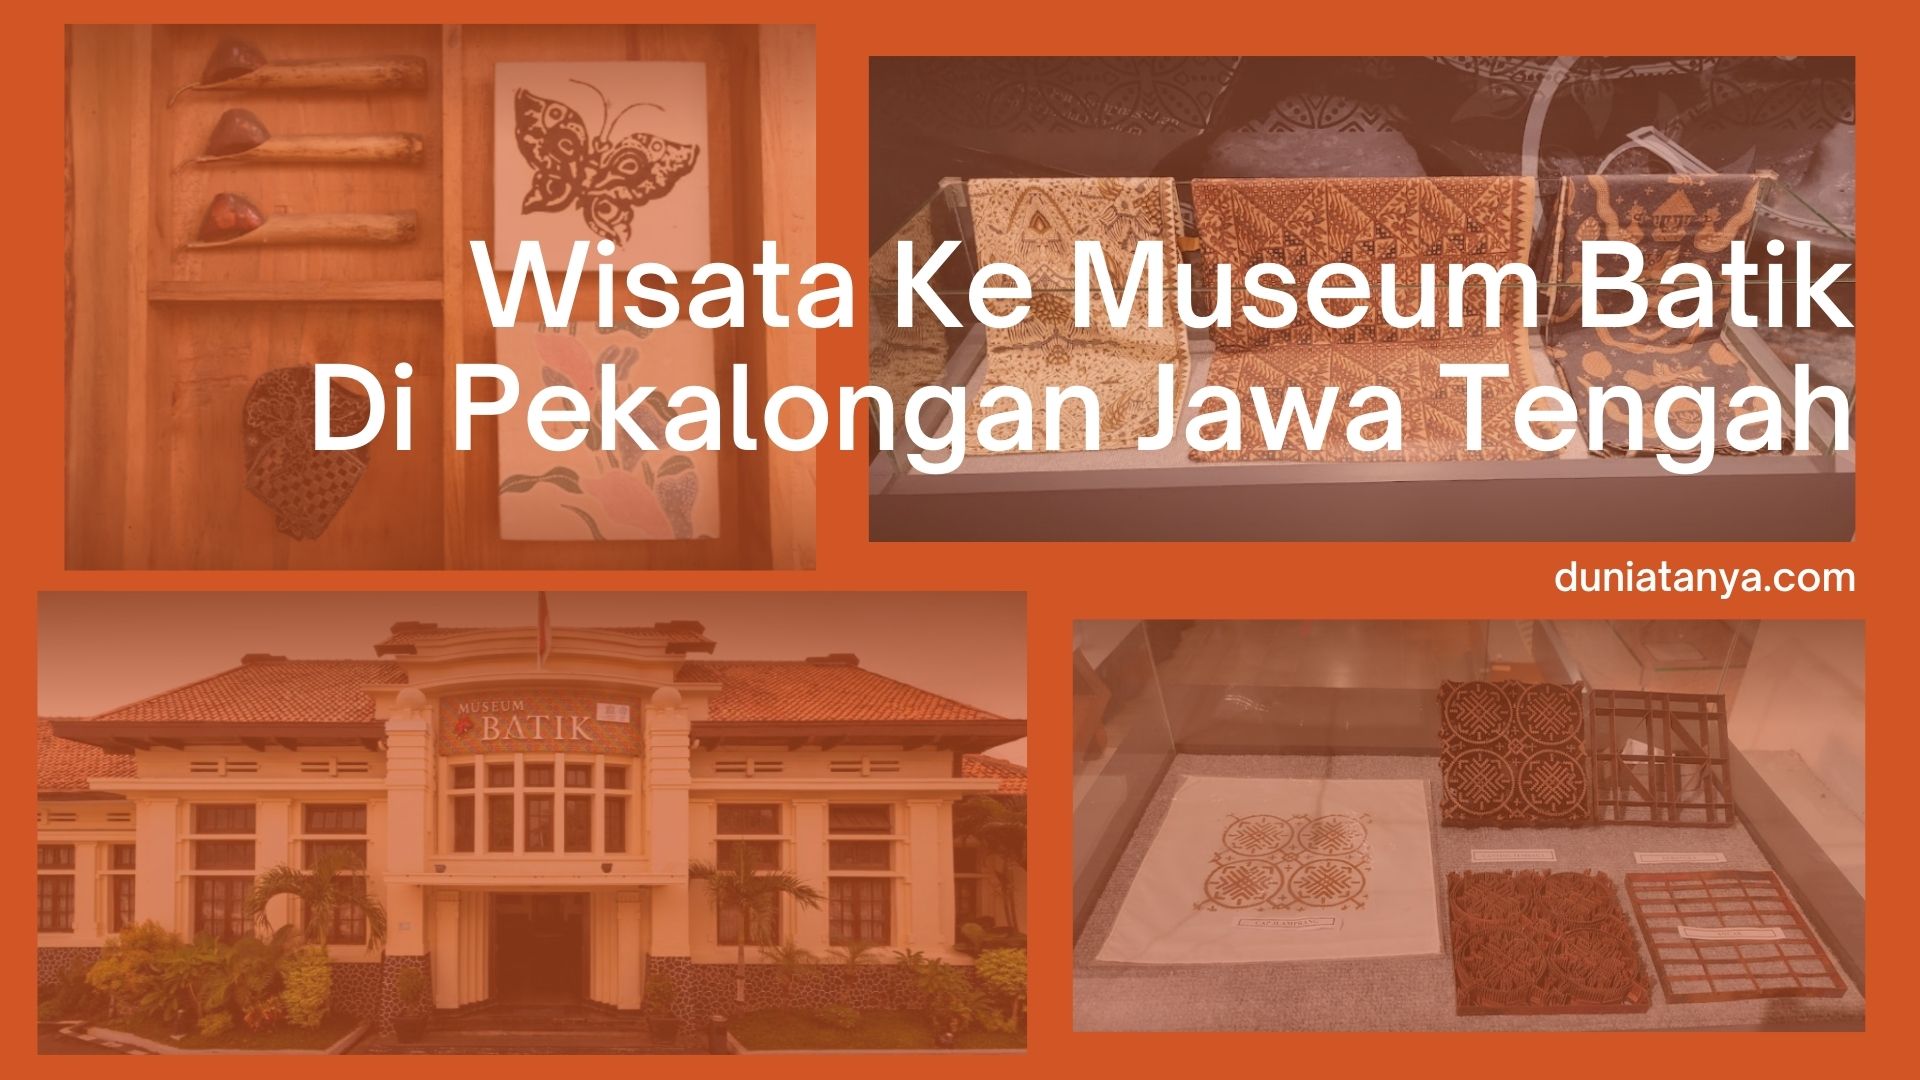 You are currently viewing Wisata Ke Museum Batik Di Pekalongan Jawa Tengah